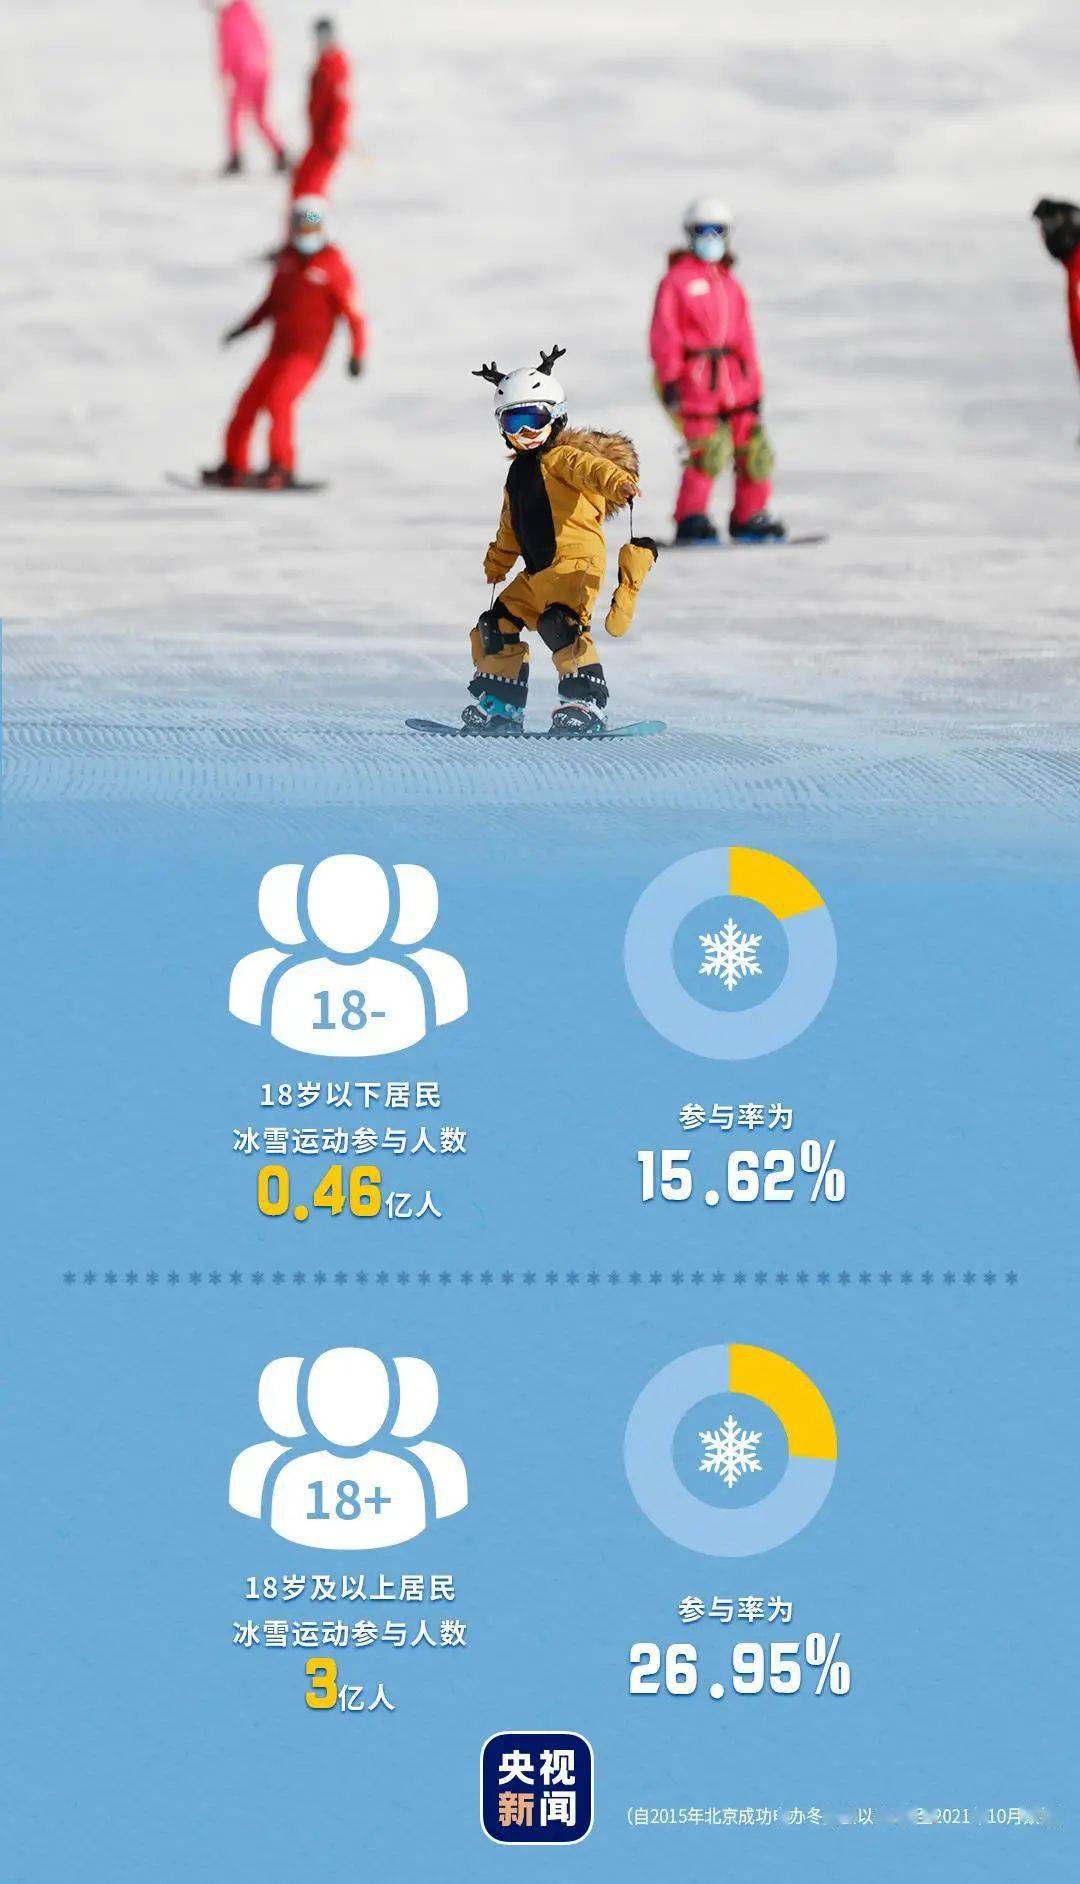 北京成功申办冬奥会以来,全国有多少人参与冰雪运动?